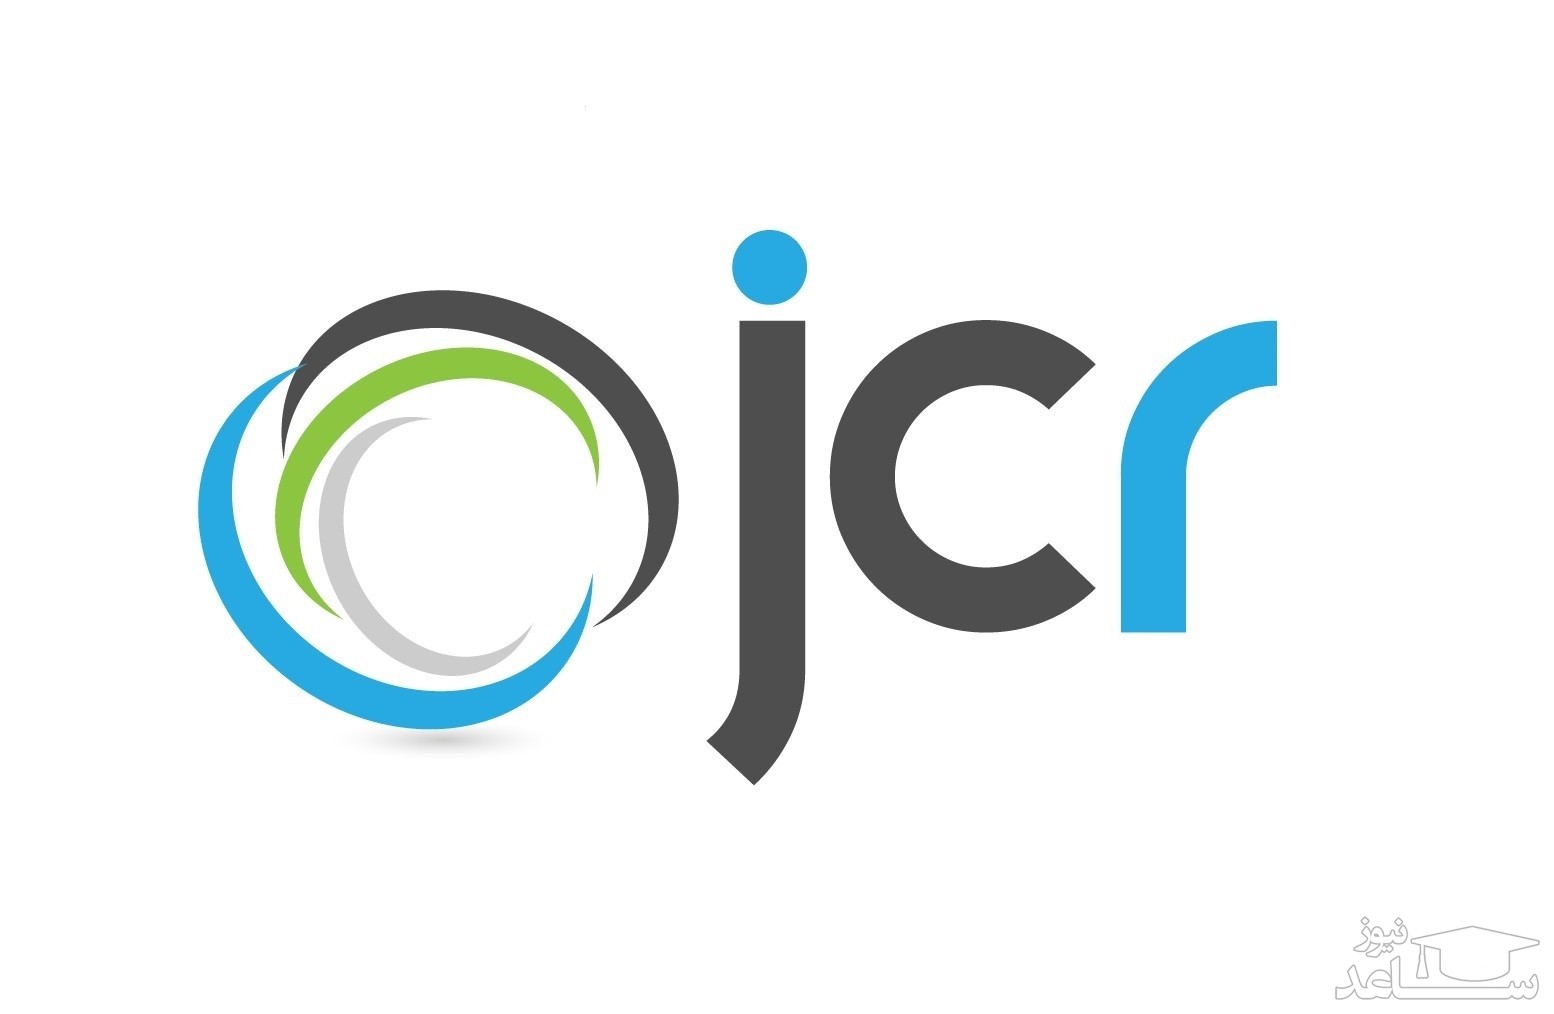 تعریف JCR و آشنایی با ایمپکت فاکتور یک مجله